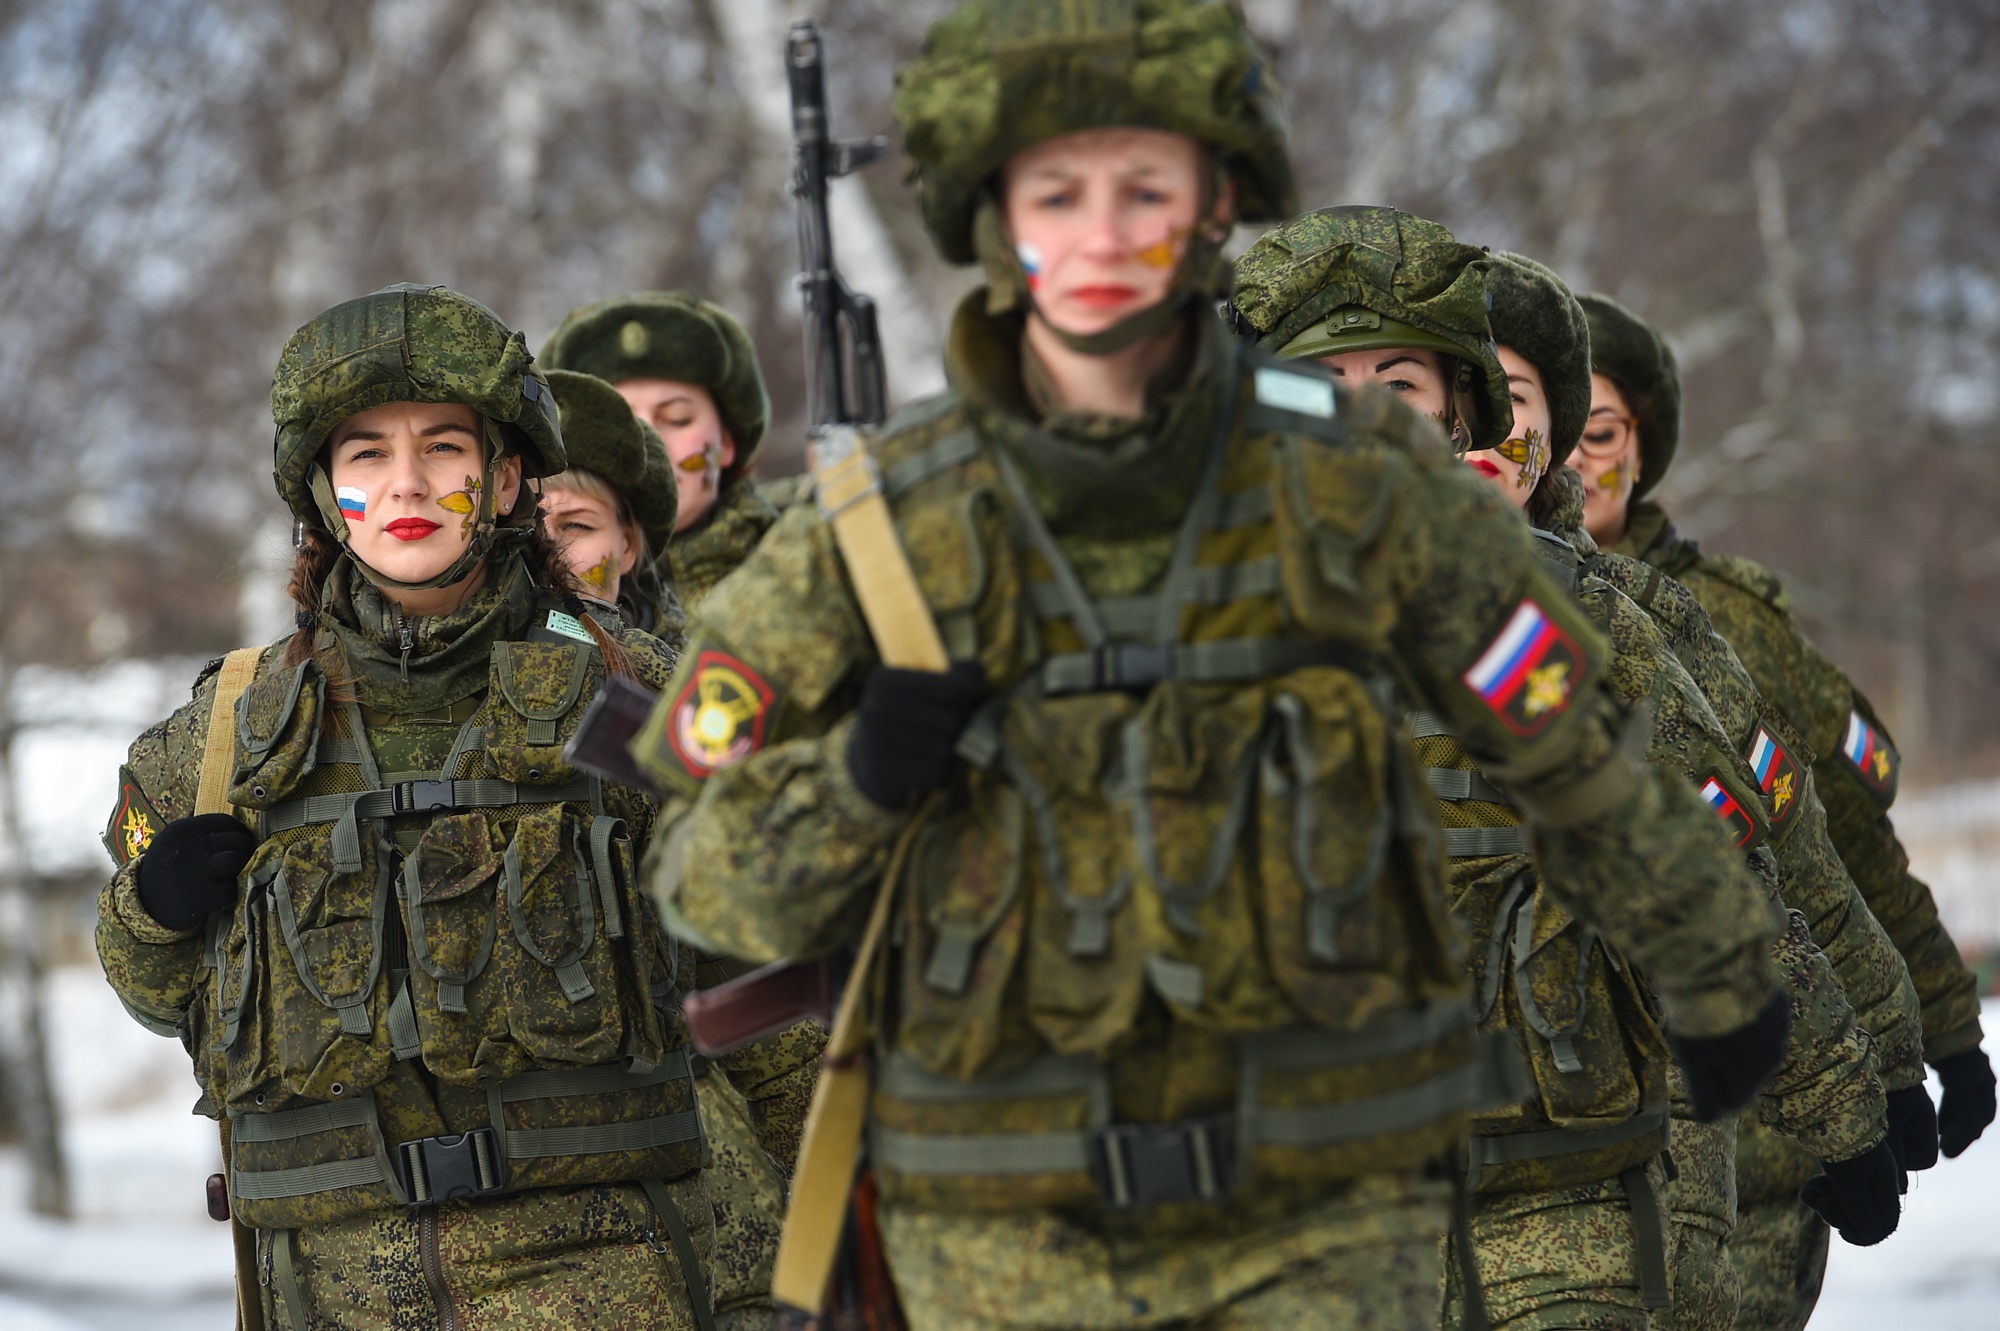 Что взять на сво по контракту. Женщины военнослужащие. Русские женщины военные. Женщины военнослужащие в России. Российские женщины военнослужащие.